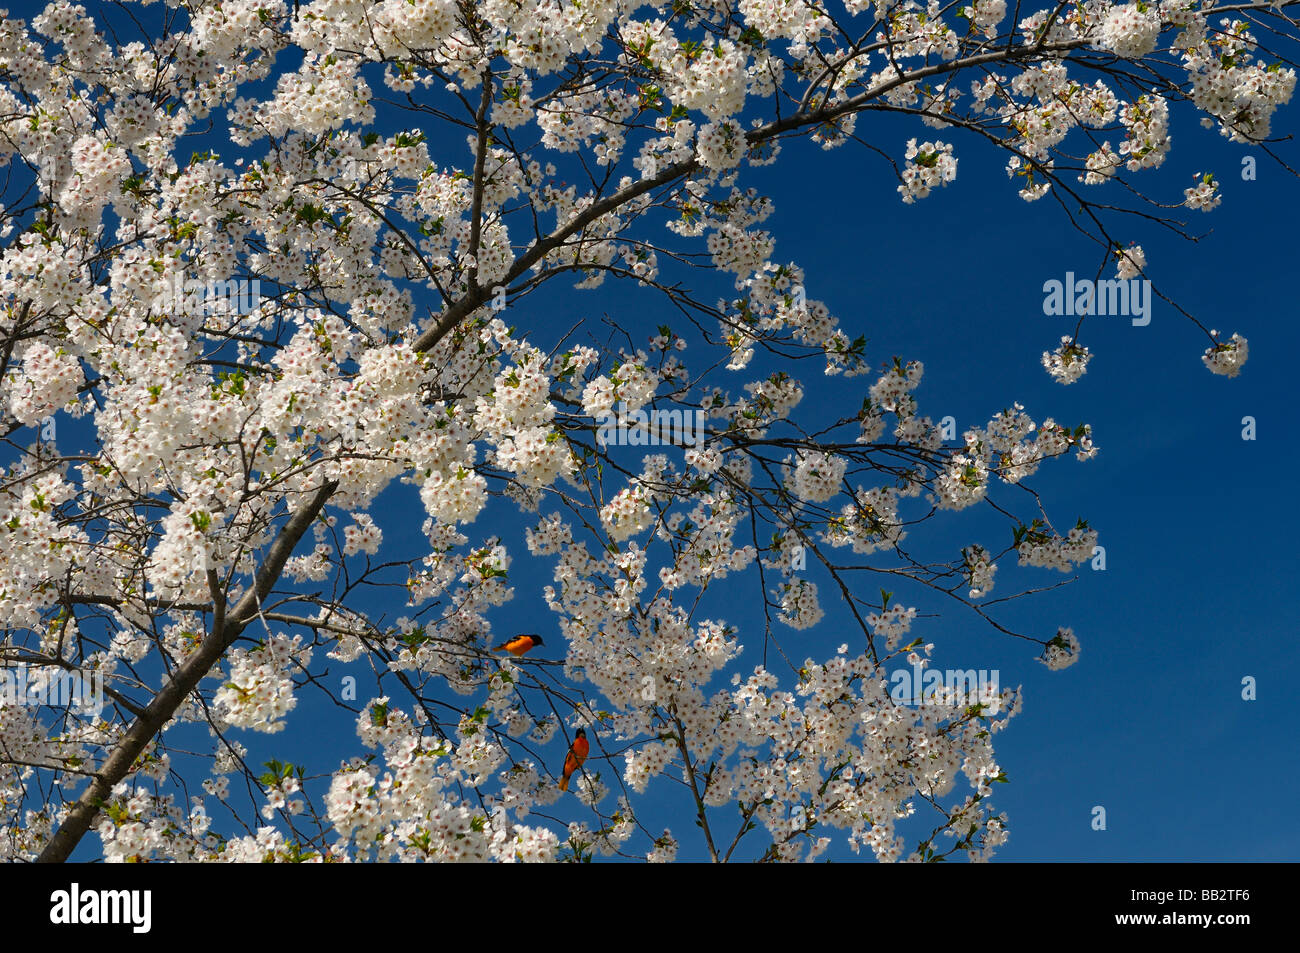 Baltimore Orioles dans un cerisier japonais plein de fleurs contre un ciel bleu Prunus serrulata Sakura Somei-Yoshino à High Park, Toronto Banque D'Images